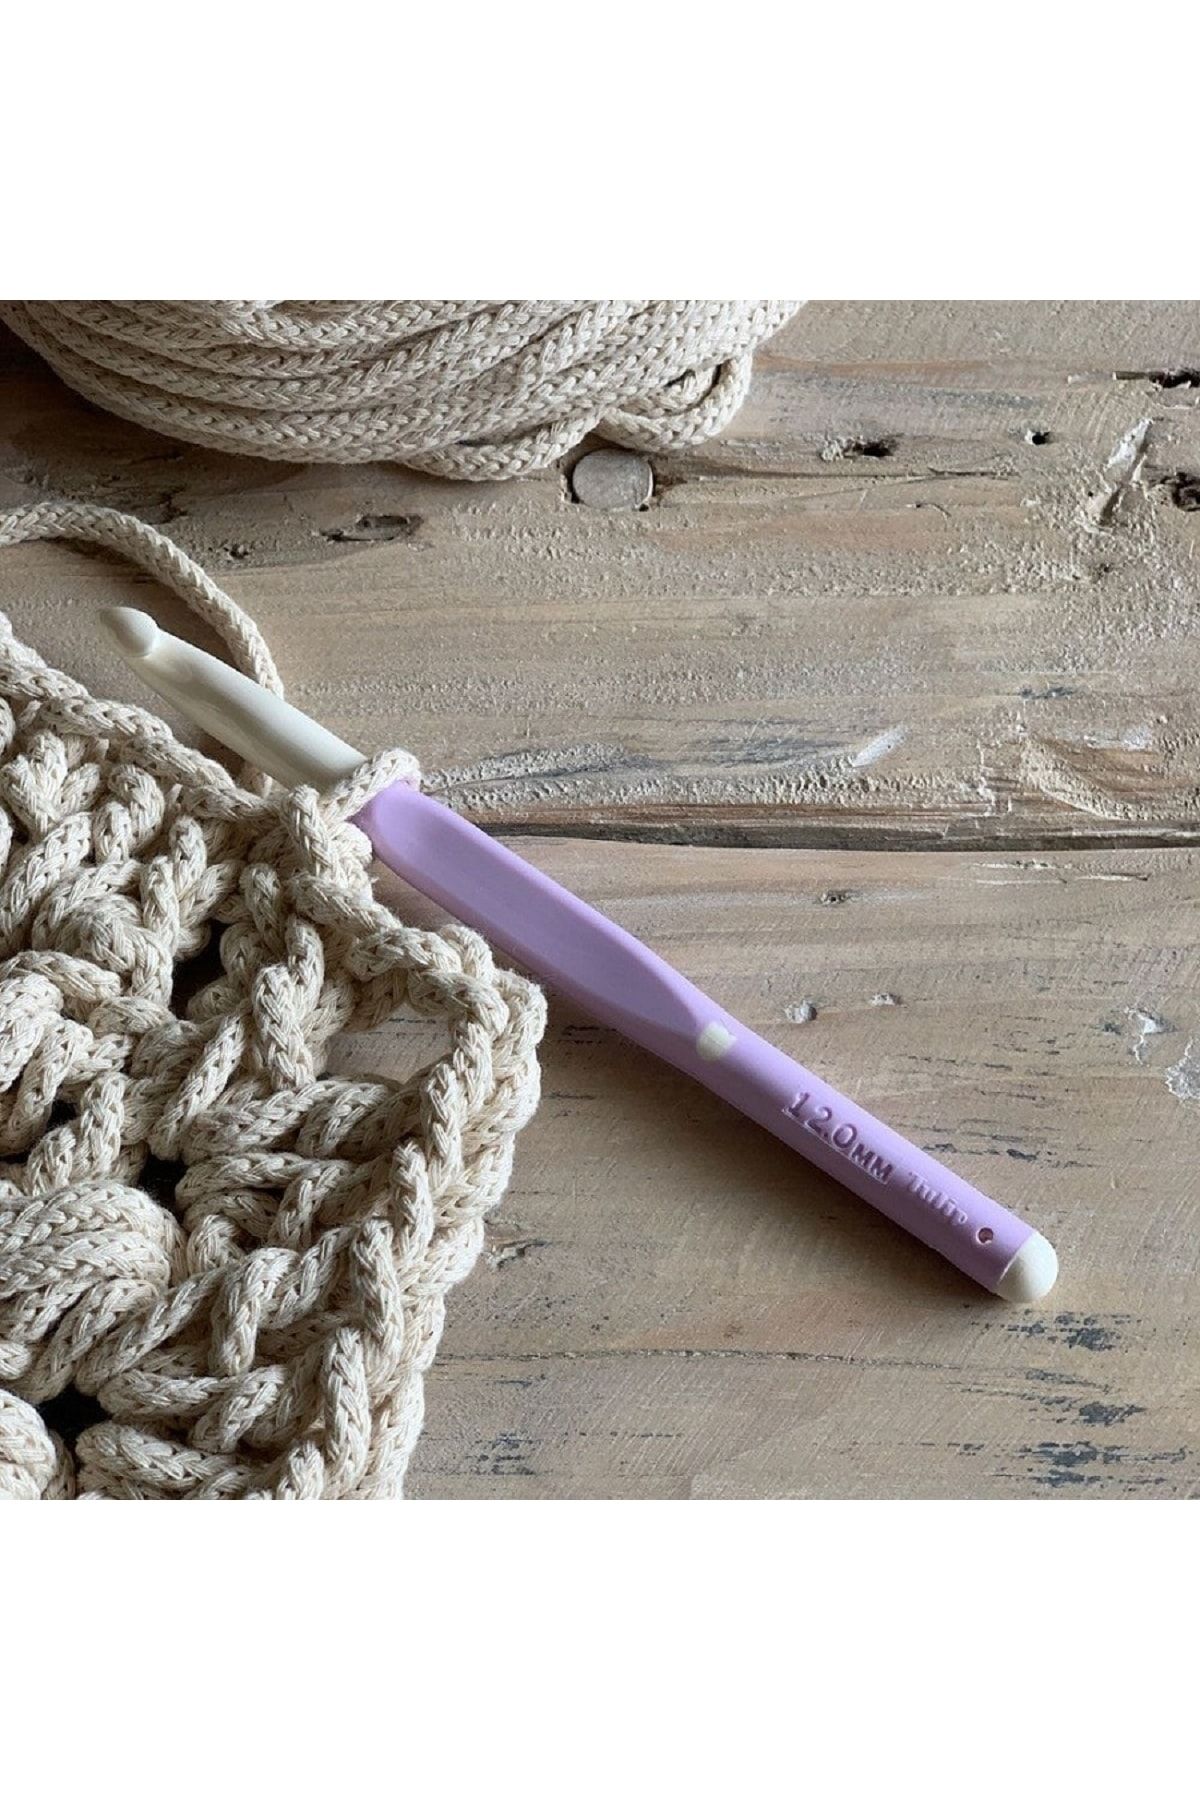 BALIM ÖRGÜ EVİ Tulip Etimo Grandhook Wool Crochet Hook 12 Mm 3